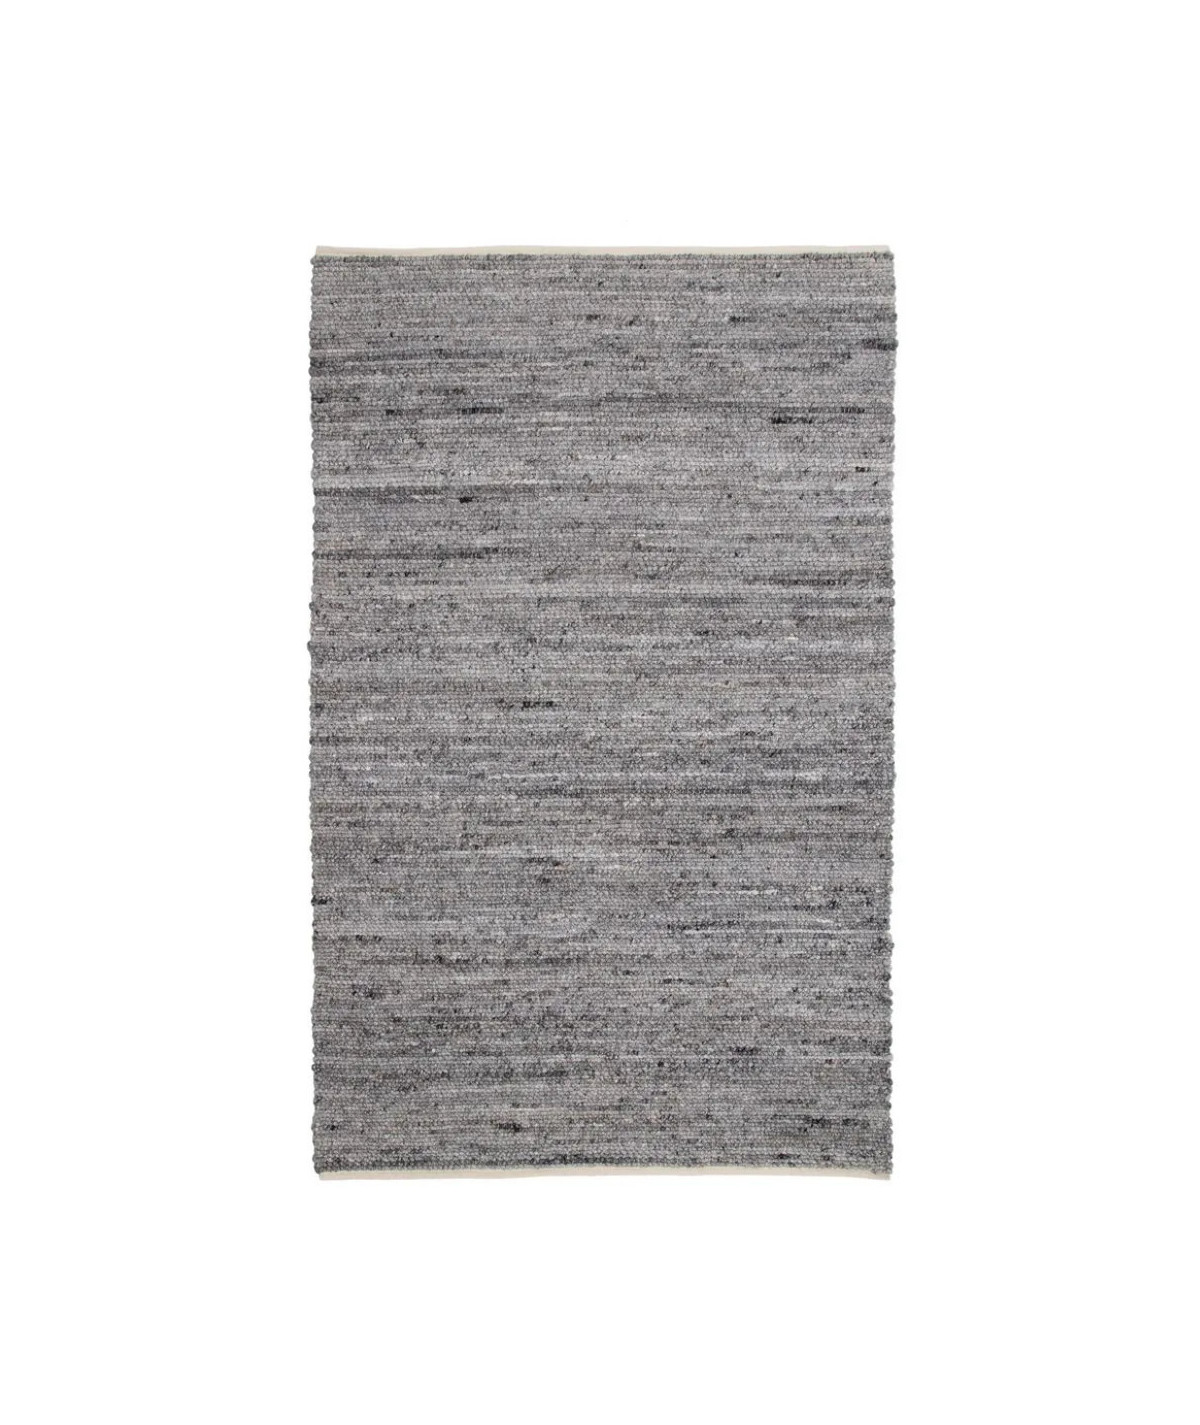 Tapis gris tissé 160x230cm - Birjand - Tapis moderne | Yesdeko